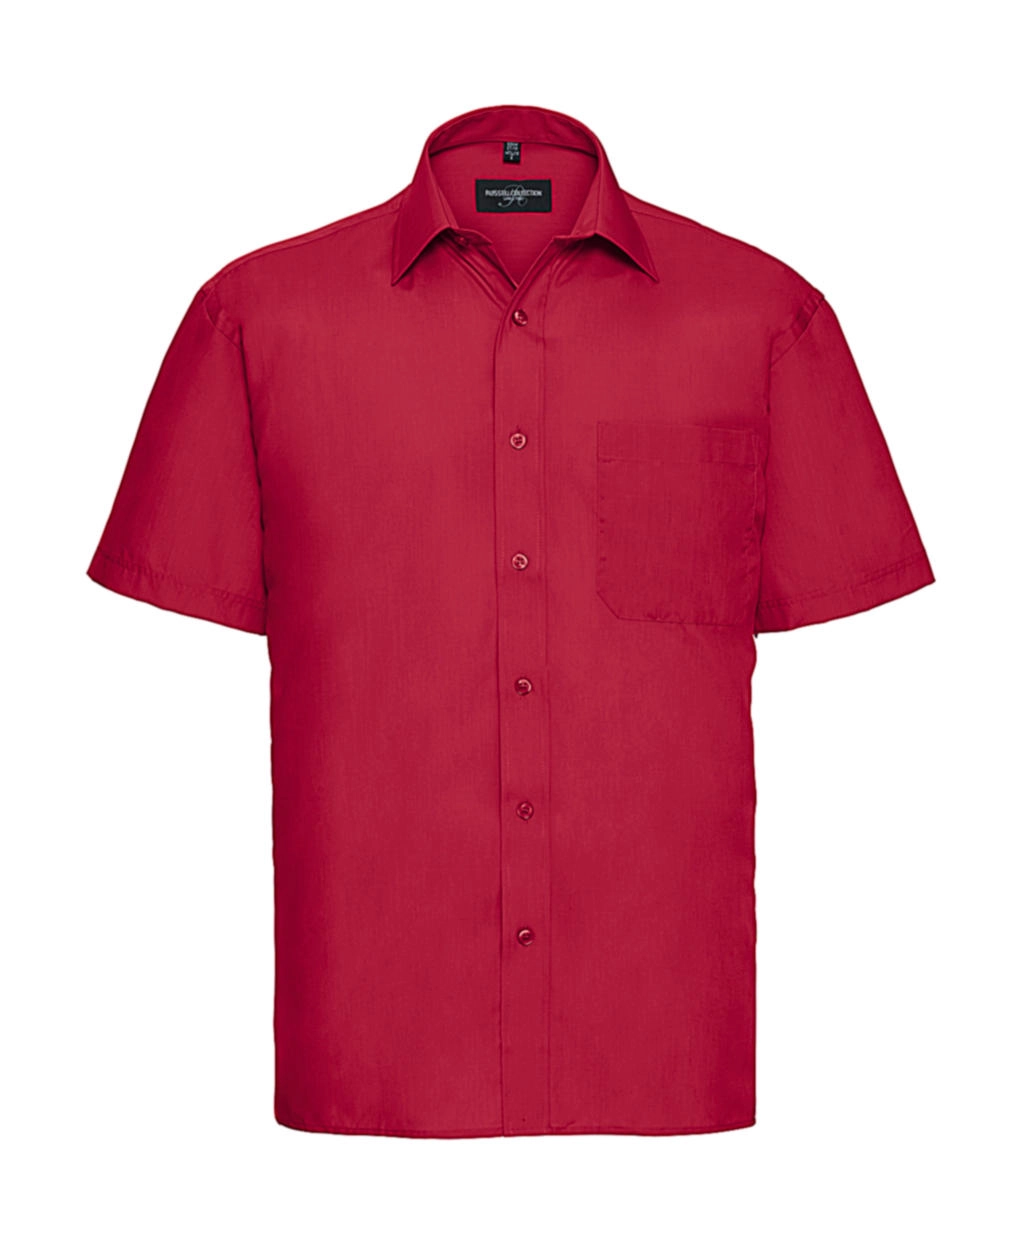 Poplin Shirt zum Besticken und Bedrucken in der Farbe Classic Red mit Ihren Logo, Schriftzug oder Motiv.